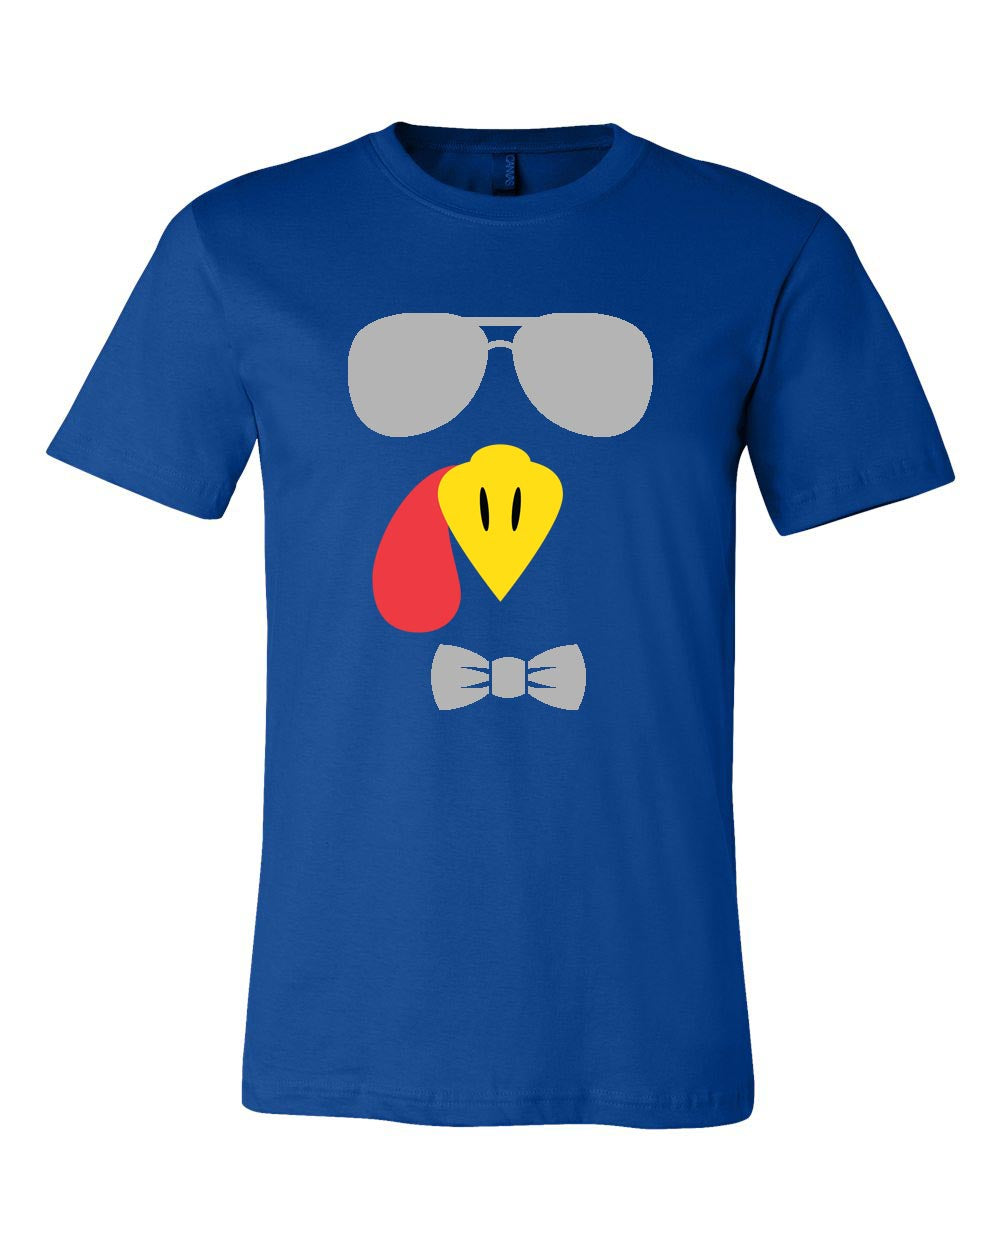 Turkey Face T-Shirt Design 3